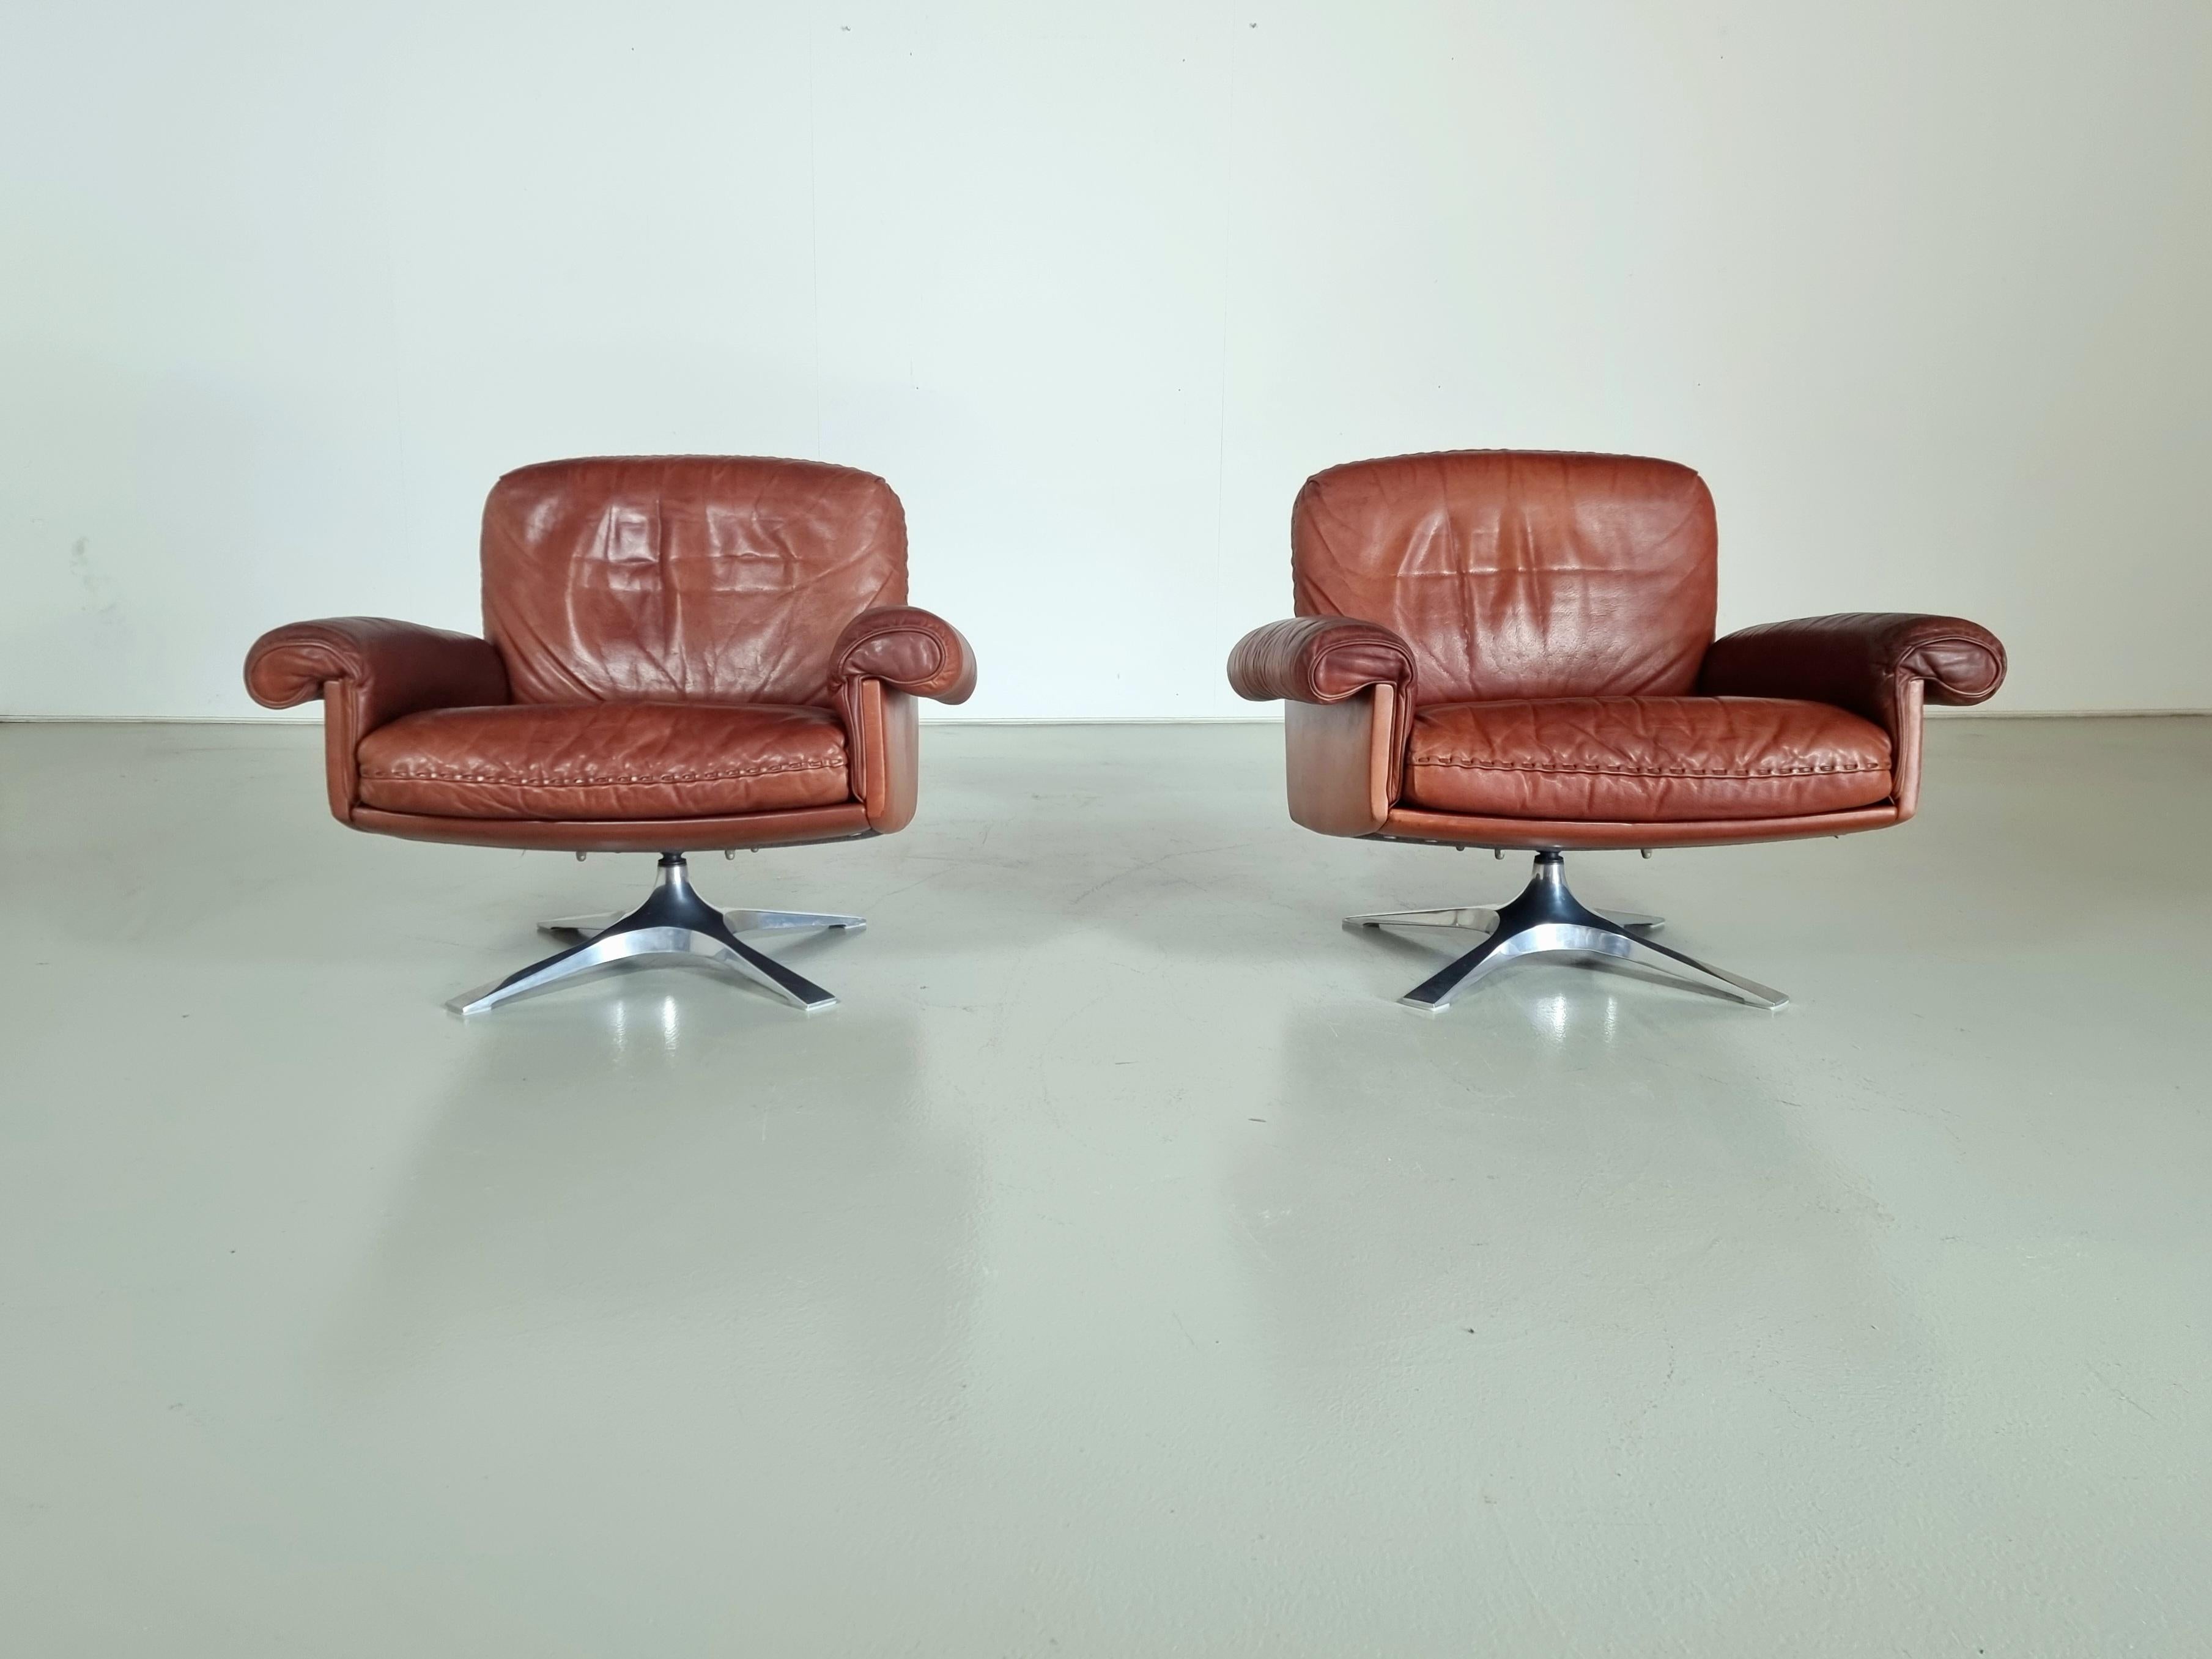 De Sede, Paar Loungesessel Modell ''DS-31'', Leder, verchromtes Metall, Schweiz, 1970er Jahre

Der tiefe Sitz und die geschwungenen Armlehnen garantieren ein bequemes Sitzerlebnis. Auch die dicken Ledersitzkissen bieten ein Höchstmaß an Komfort. Der